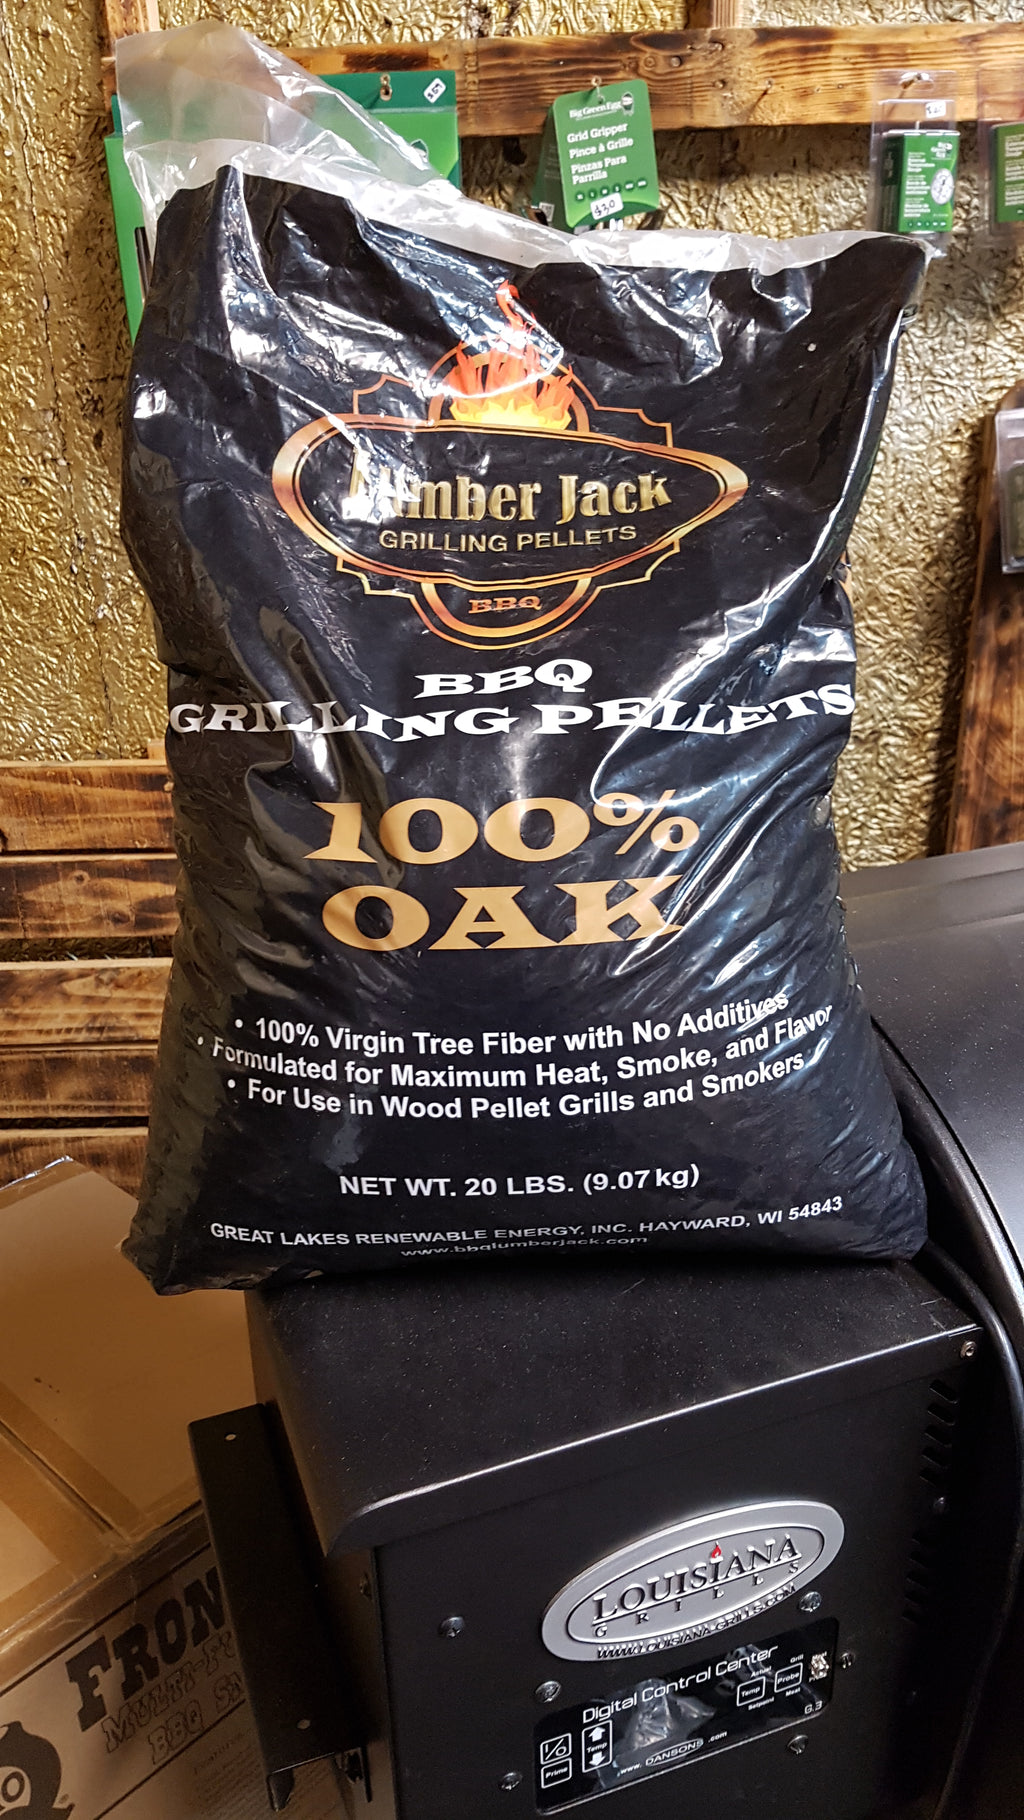 100% Oak BBQ Grilling Pellets by Lumber Jack